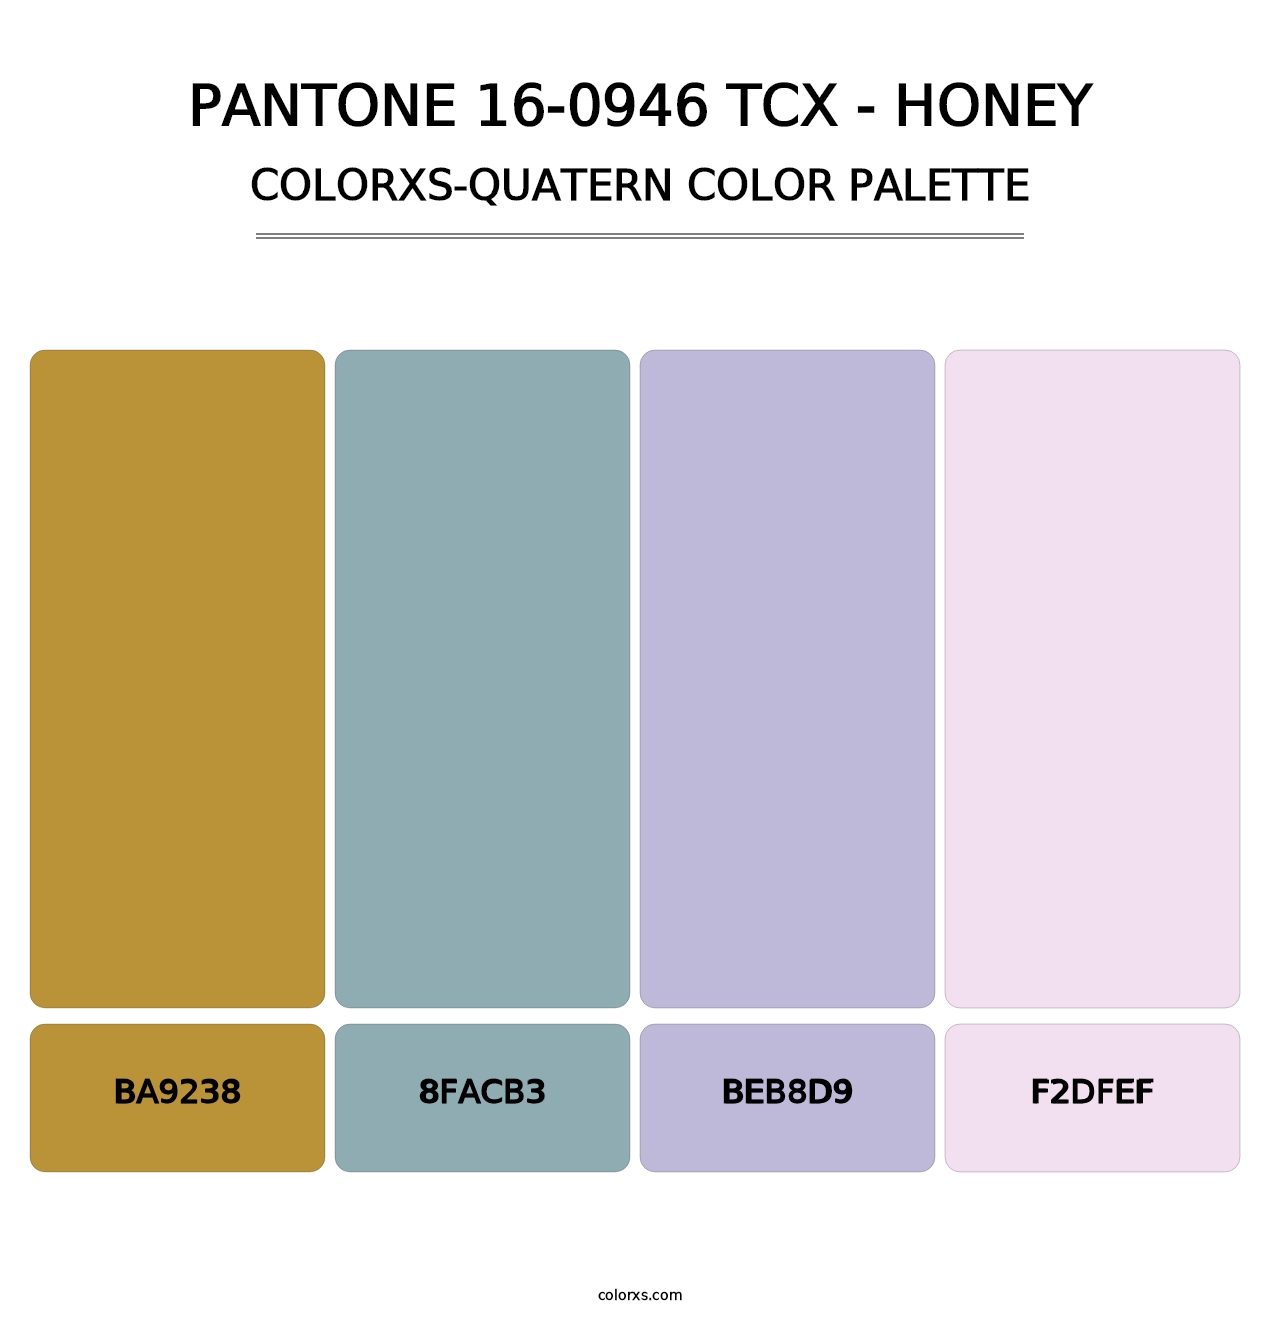 PANTONE 16-0946 TCX - Honey - Colorxs Quatern Palette